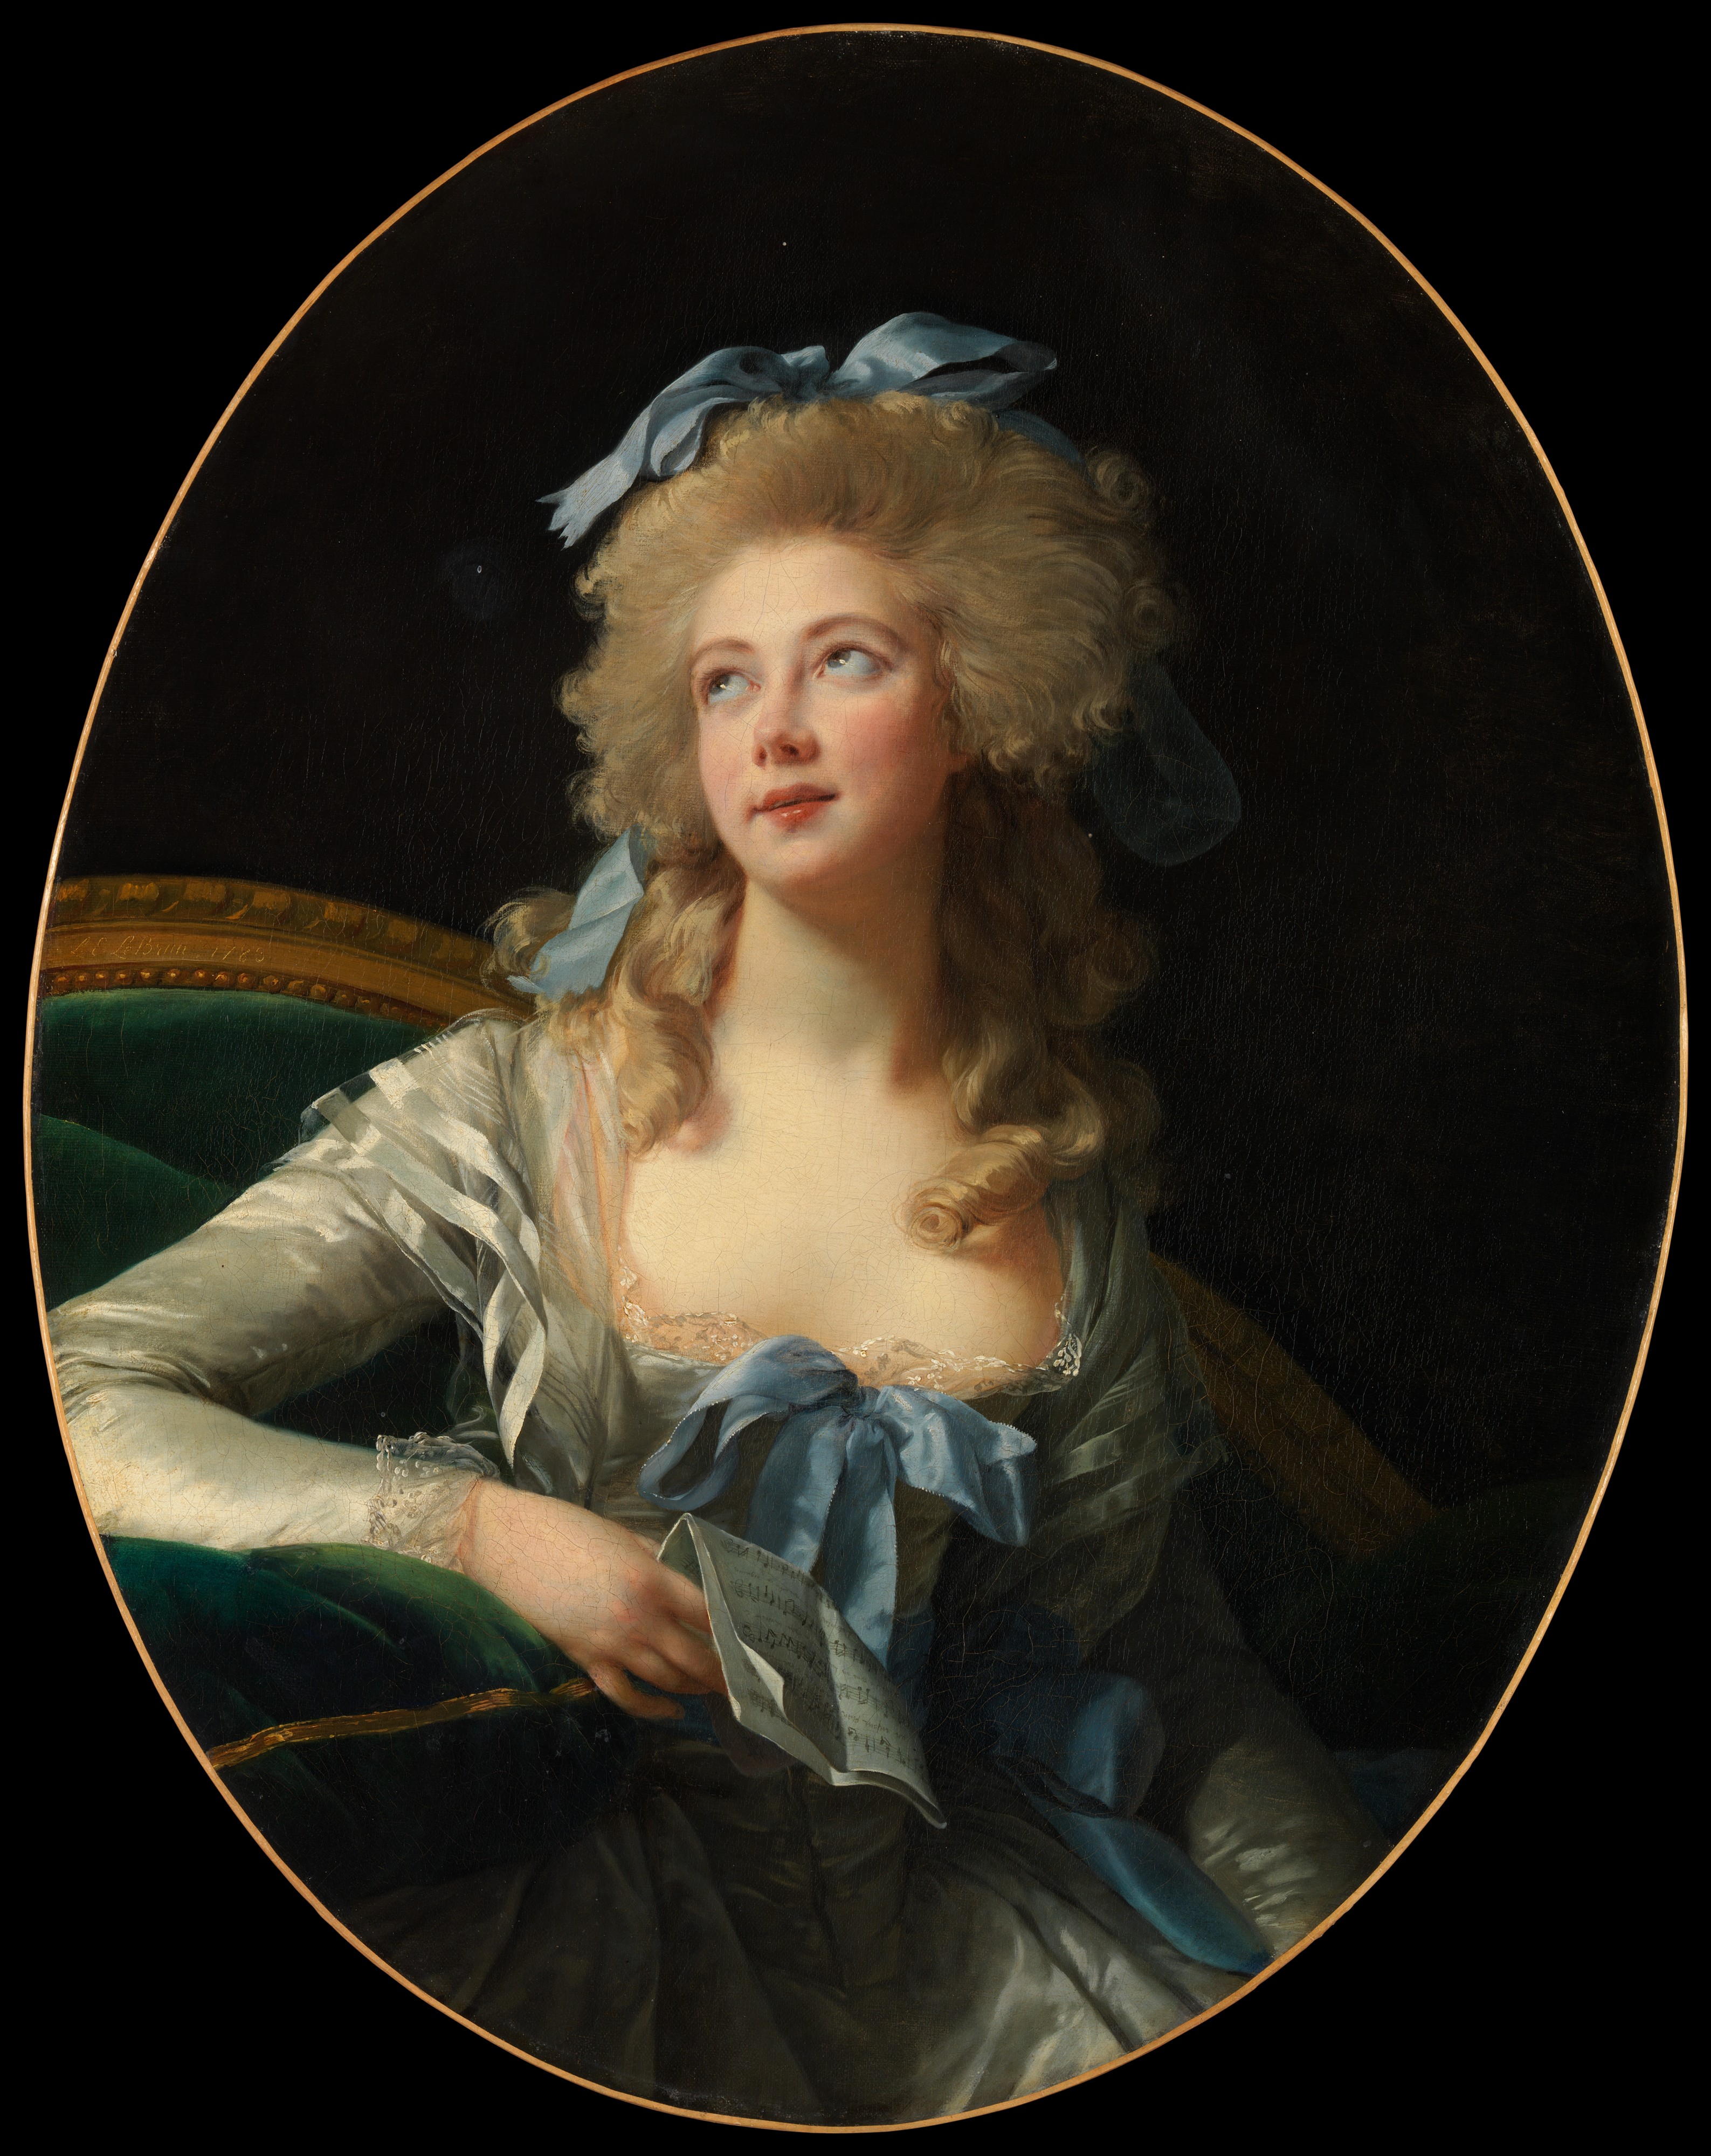 Madame Grand (Noël Catherine Vorlée) by Élisabeth Vigee Le Brun - 1783 - 92.1 x 72.4 cm 